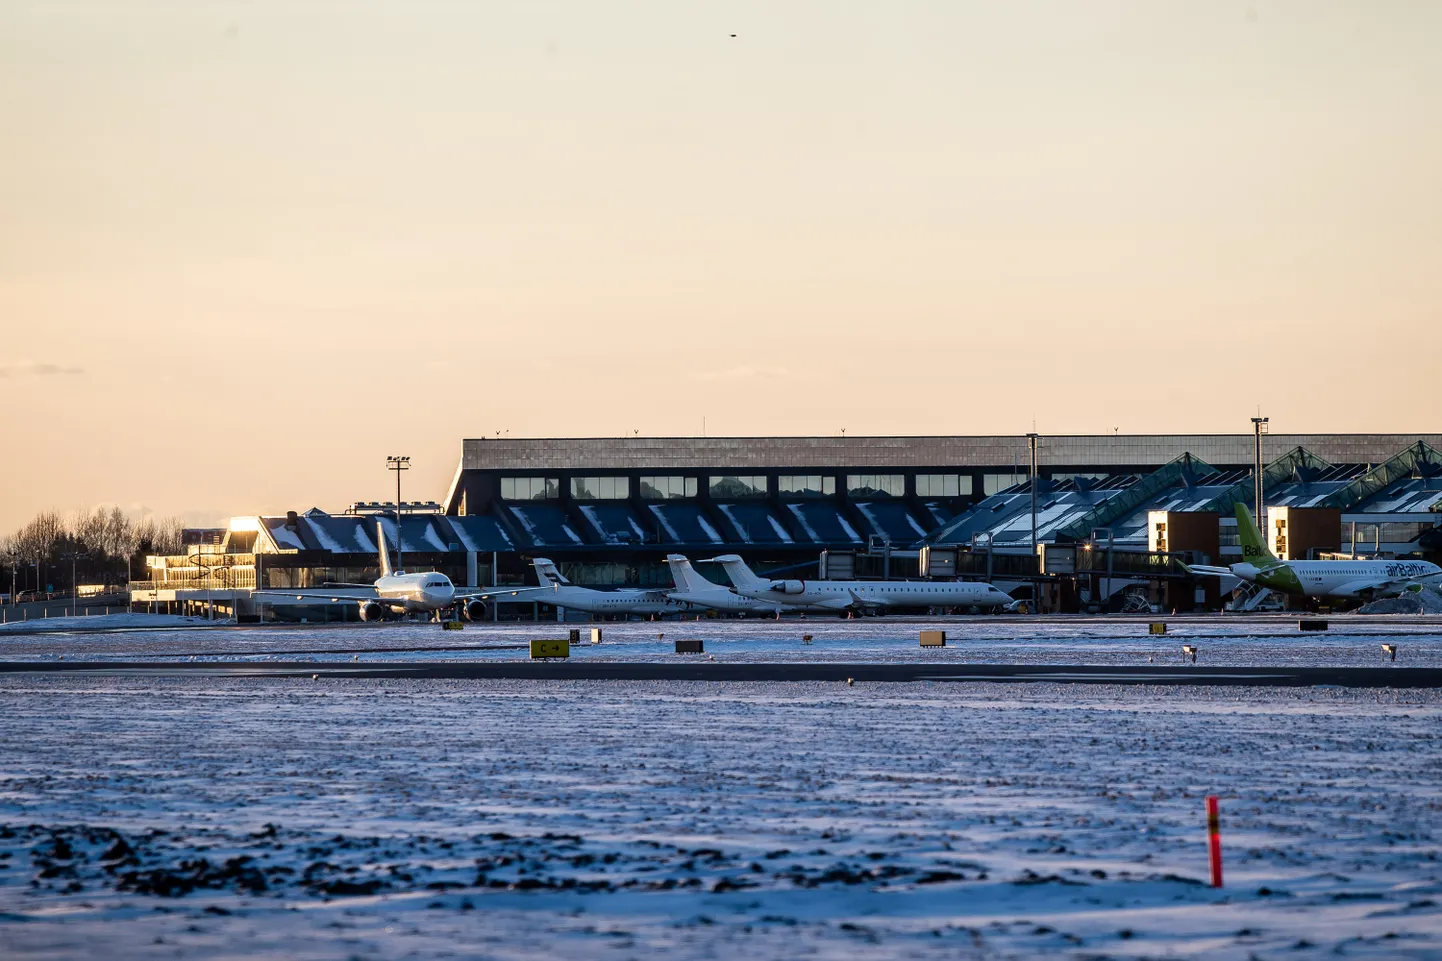 Таллиннский аэропорт.